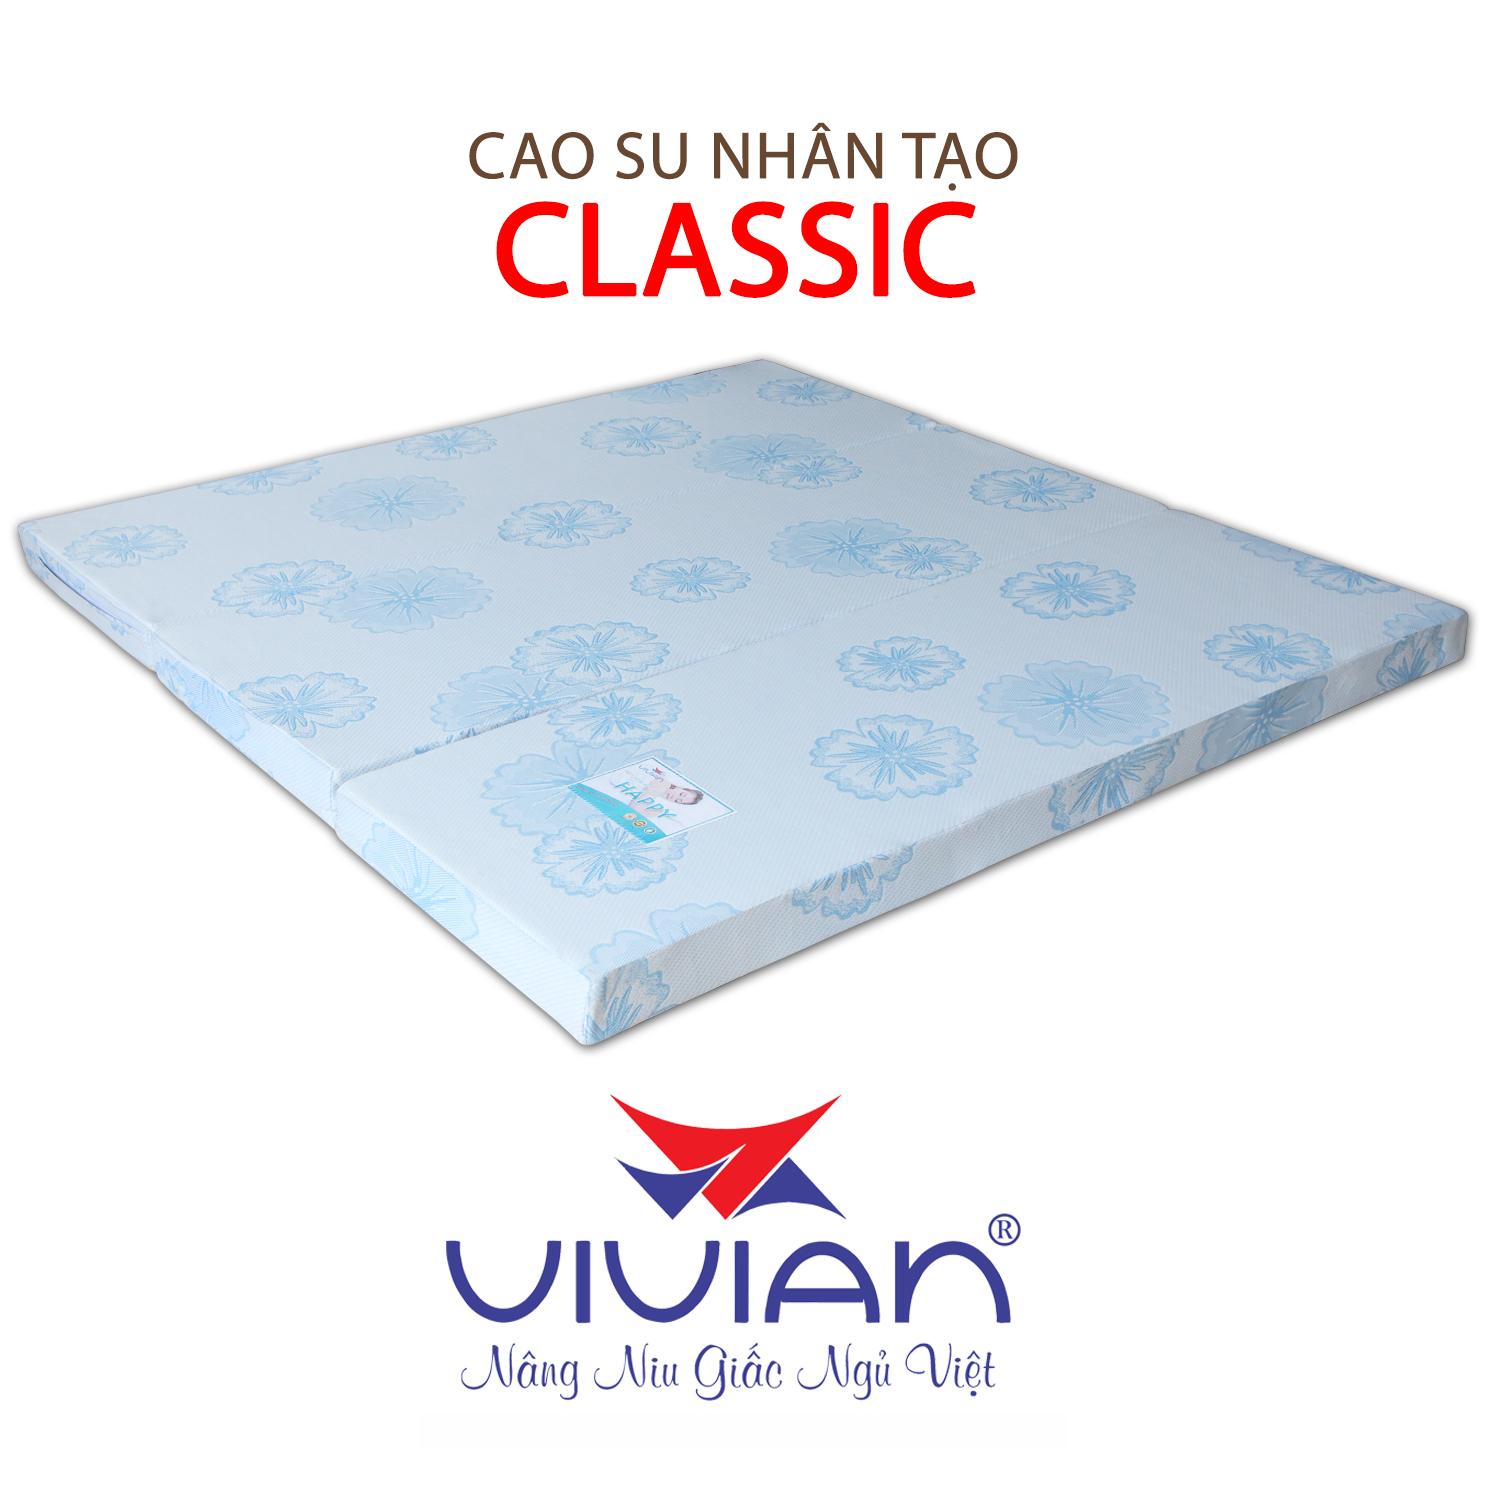 NỆM CAO SU NHÂN TẠO CLASSIC GẤP 3 VIVIAN 180X200X20